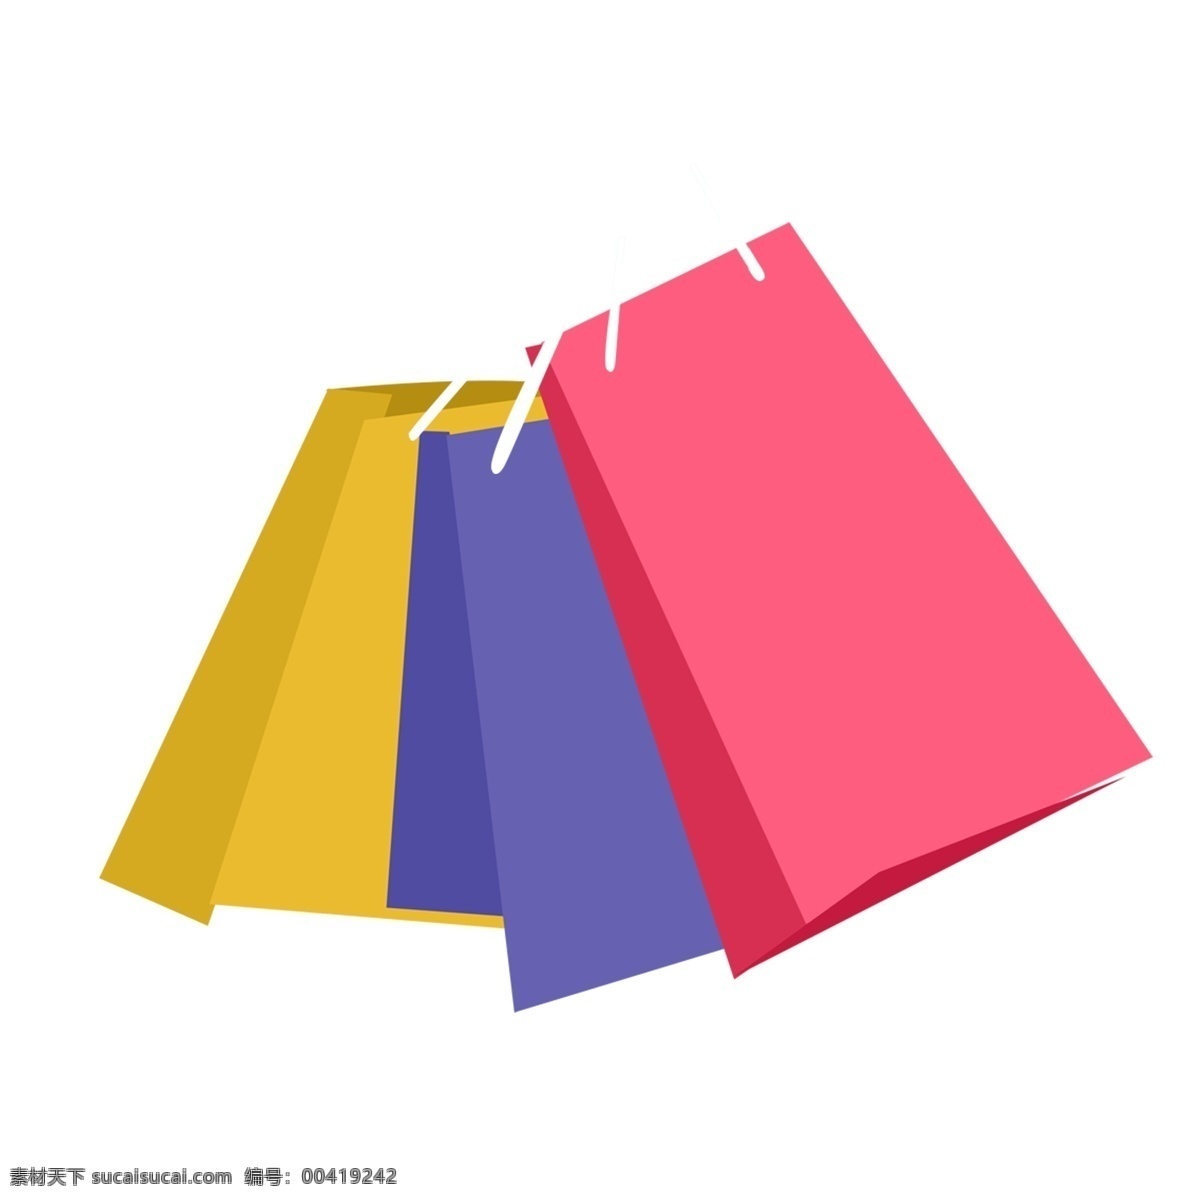 彩色 购物袋 卡通 彩色购物袋 逛街 女王节 五彩购物袋 纸质购物袋 购物节 手提购物袋 女神节